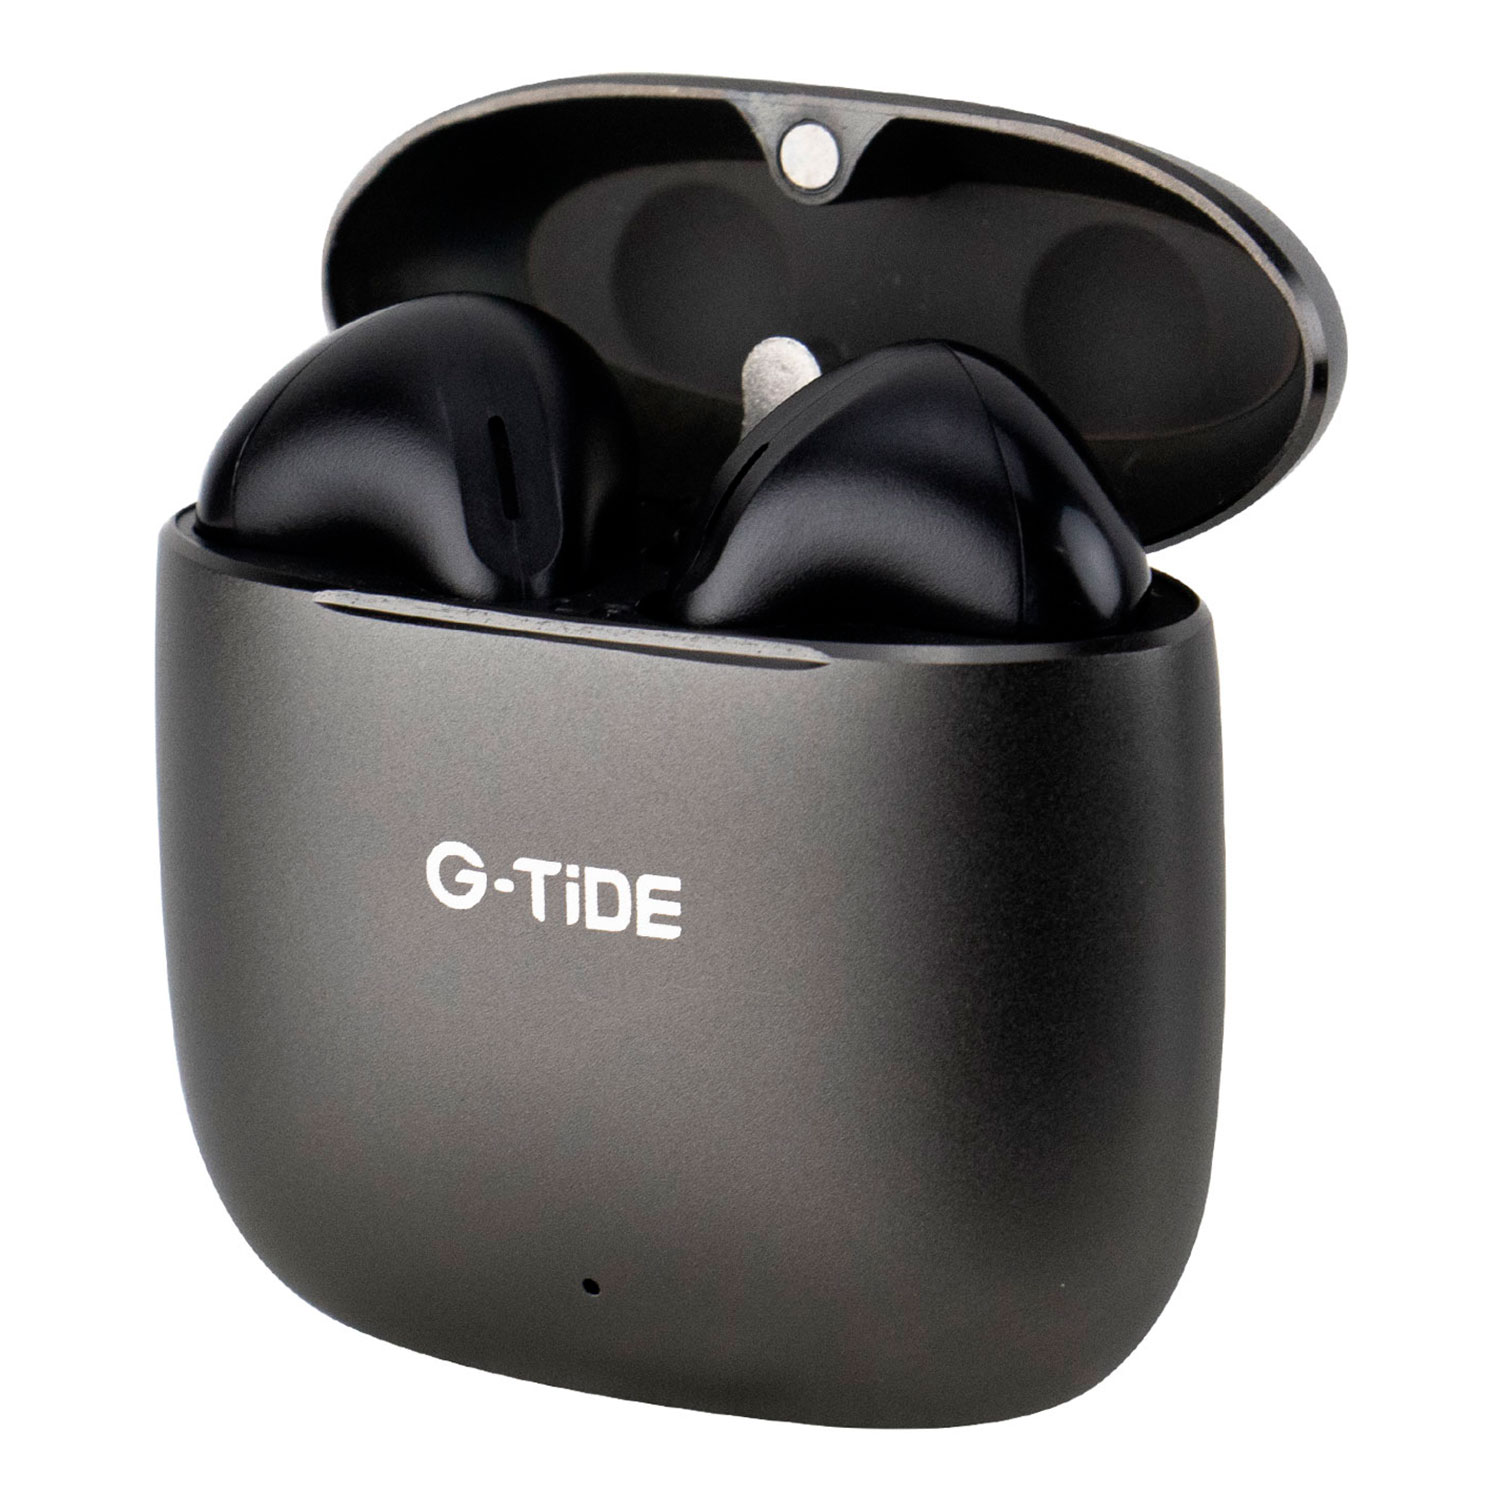 Fone de Ouvido G-Tide H11 Earphones TWS005 Wirelees Bluetooth - Preto